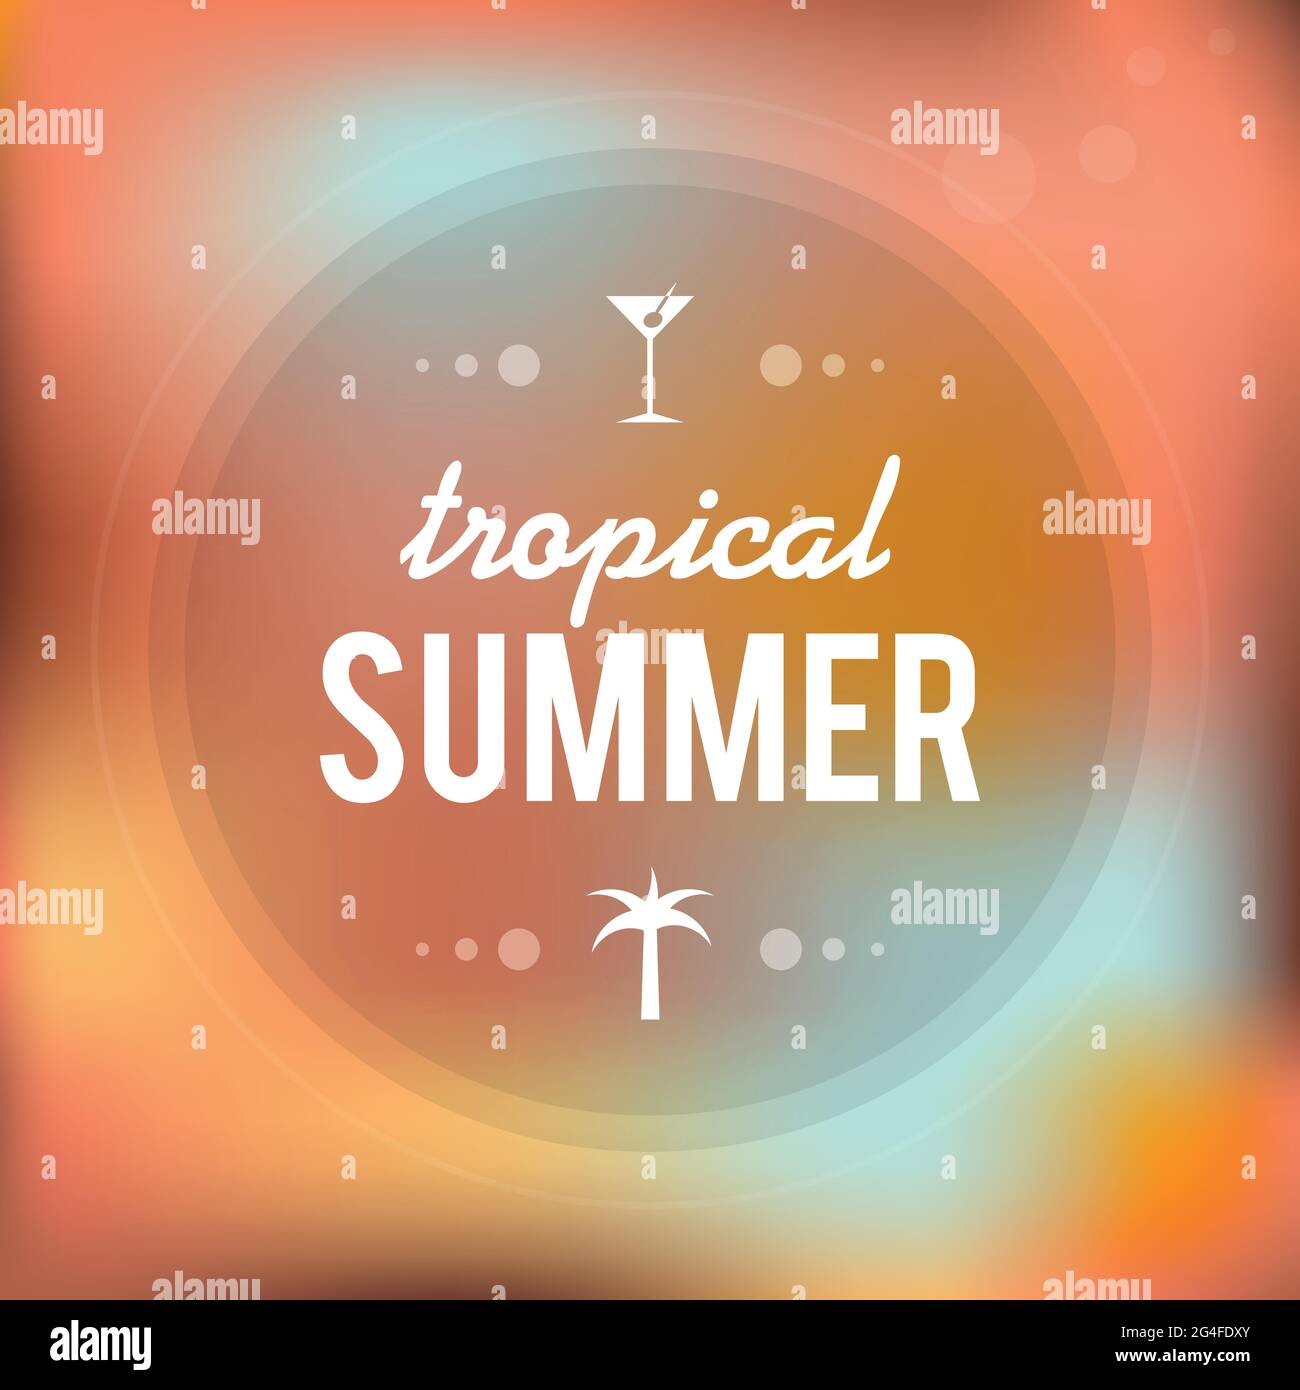 Tropischer Sommer. Cocktail- und Palmenikone. Unscharfer Hintergrund. Vektorgrafik, flaches Design Stock Vektor